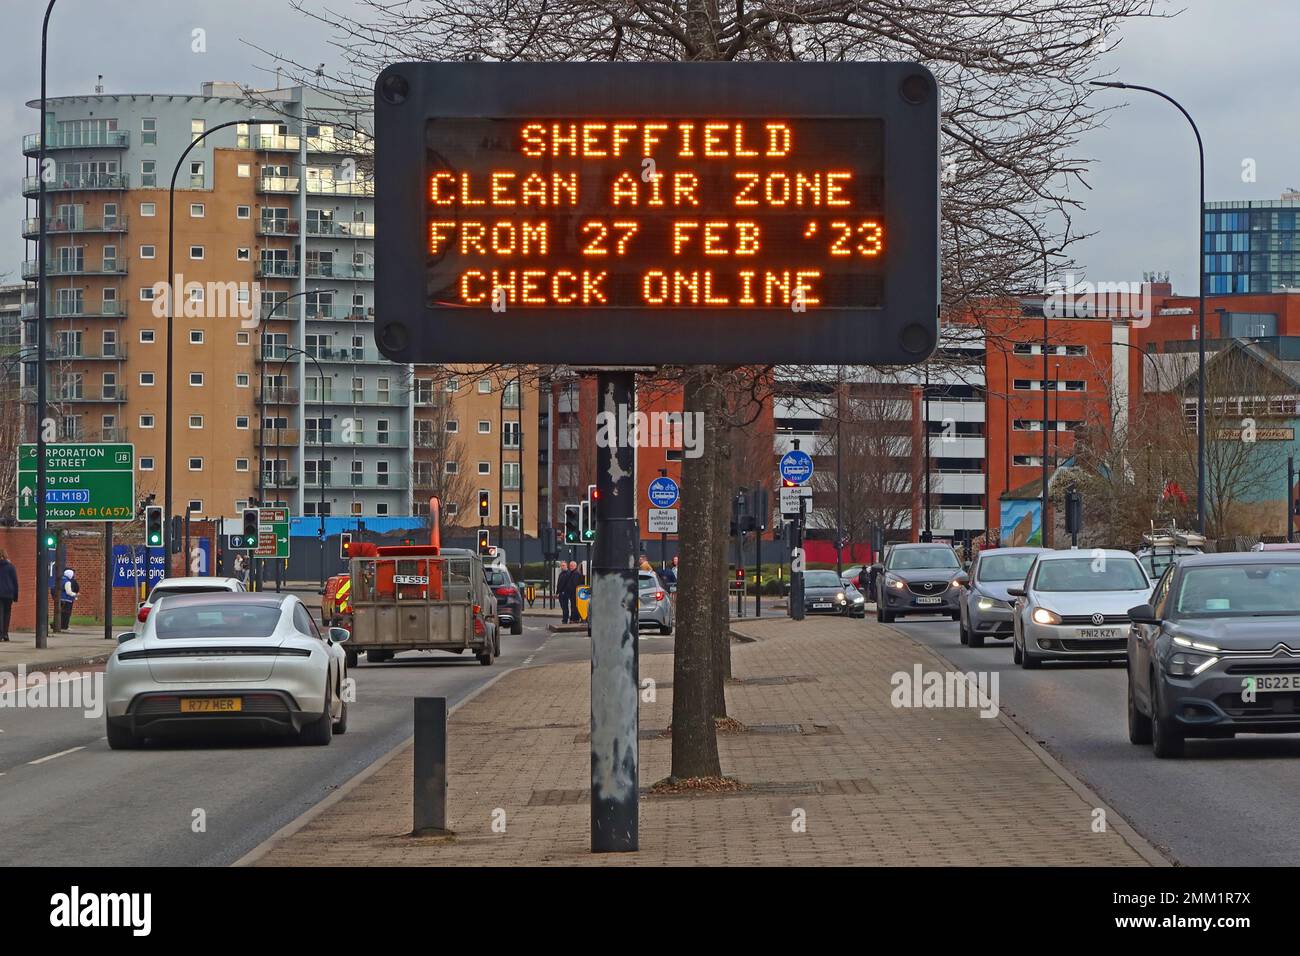 Sheffield Clean Air zone, à partir du 27 février 2023 - Clean Air zones slink digital sign - les conducteurs sont invités à vérifier les détails en ligne Banque D'Images